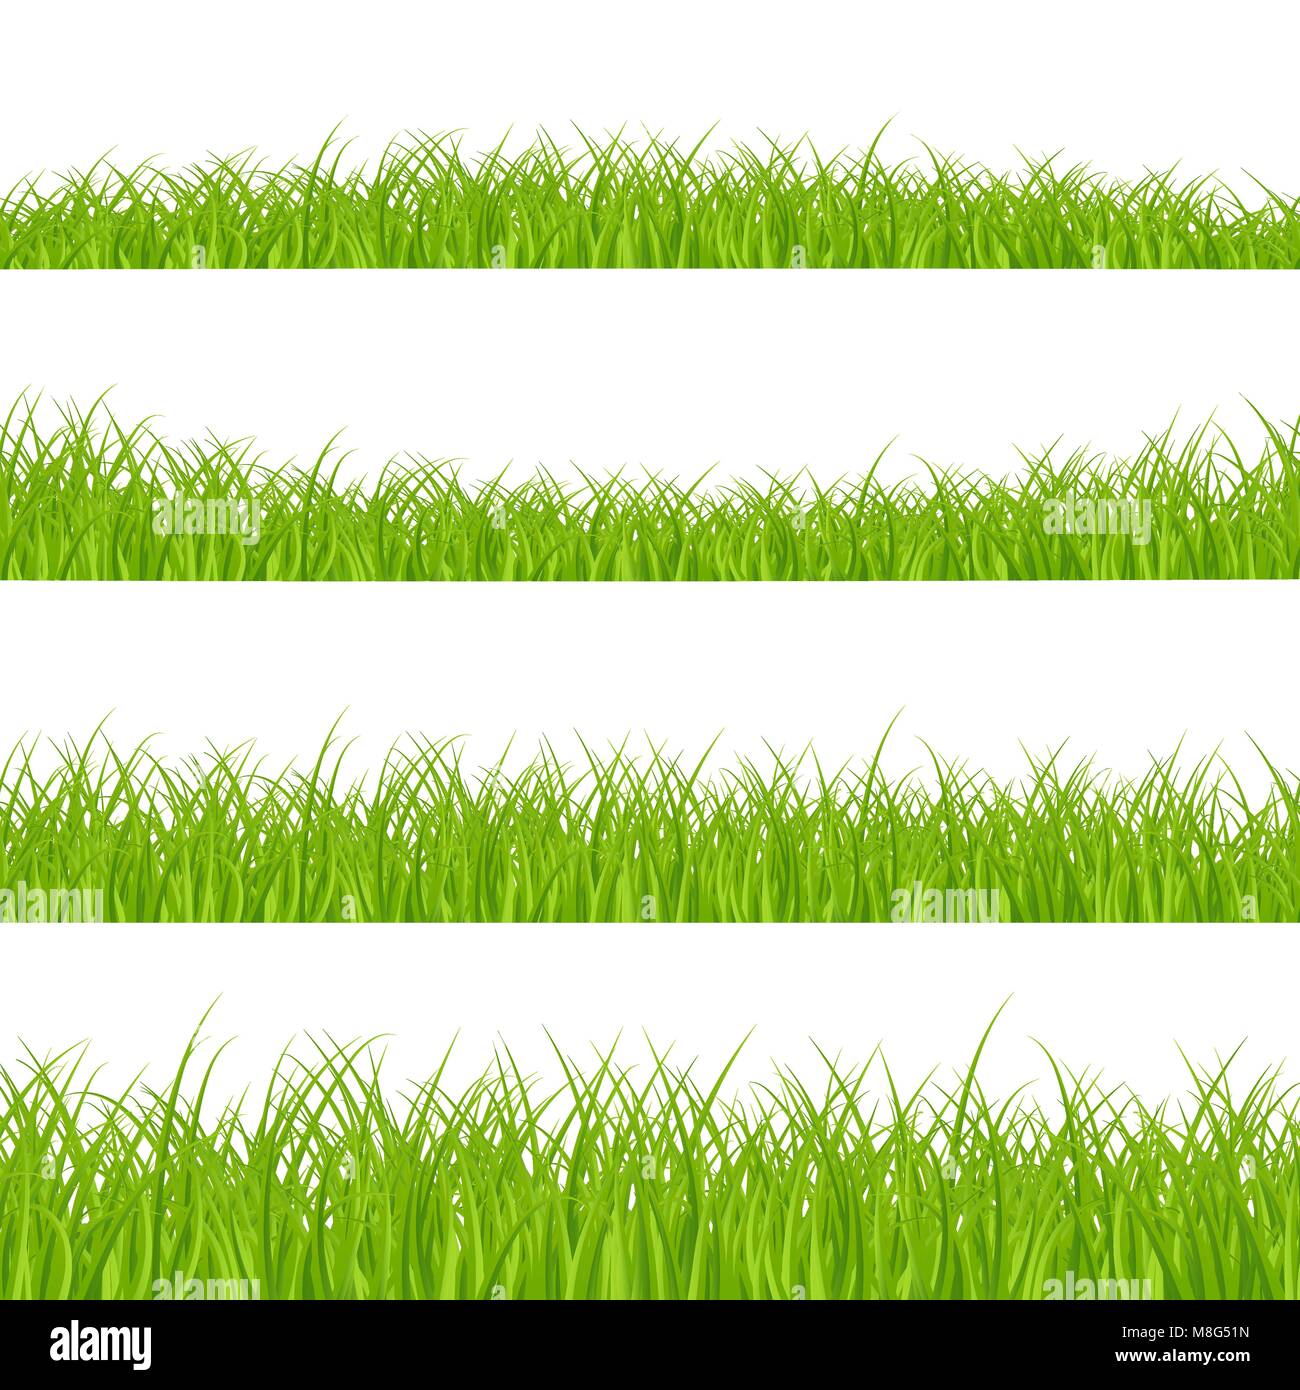 Définir les frontières de l'herbe. Panorama de l'usine d'herbe. Frontière d'herbe ou de l'image. Vector illustration isolé sur fond blanc Illustration de Vecteur